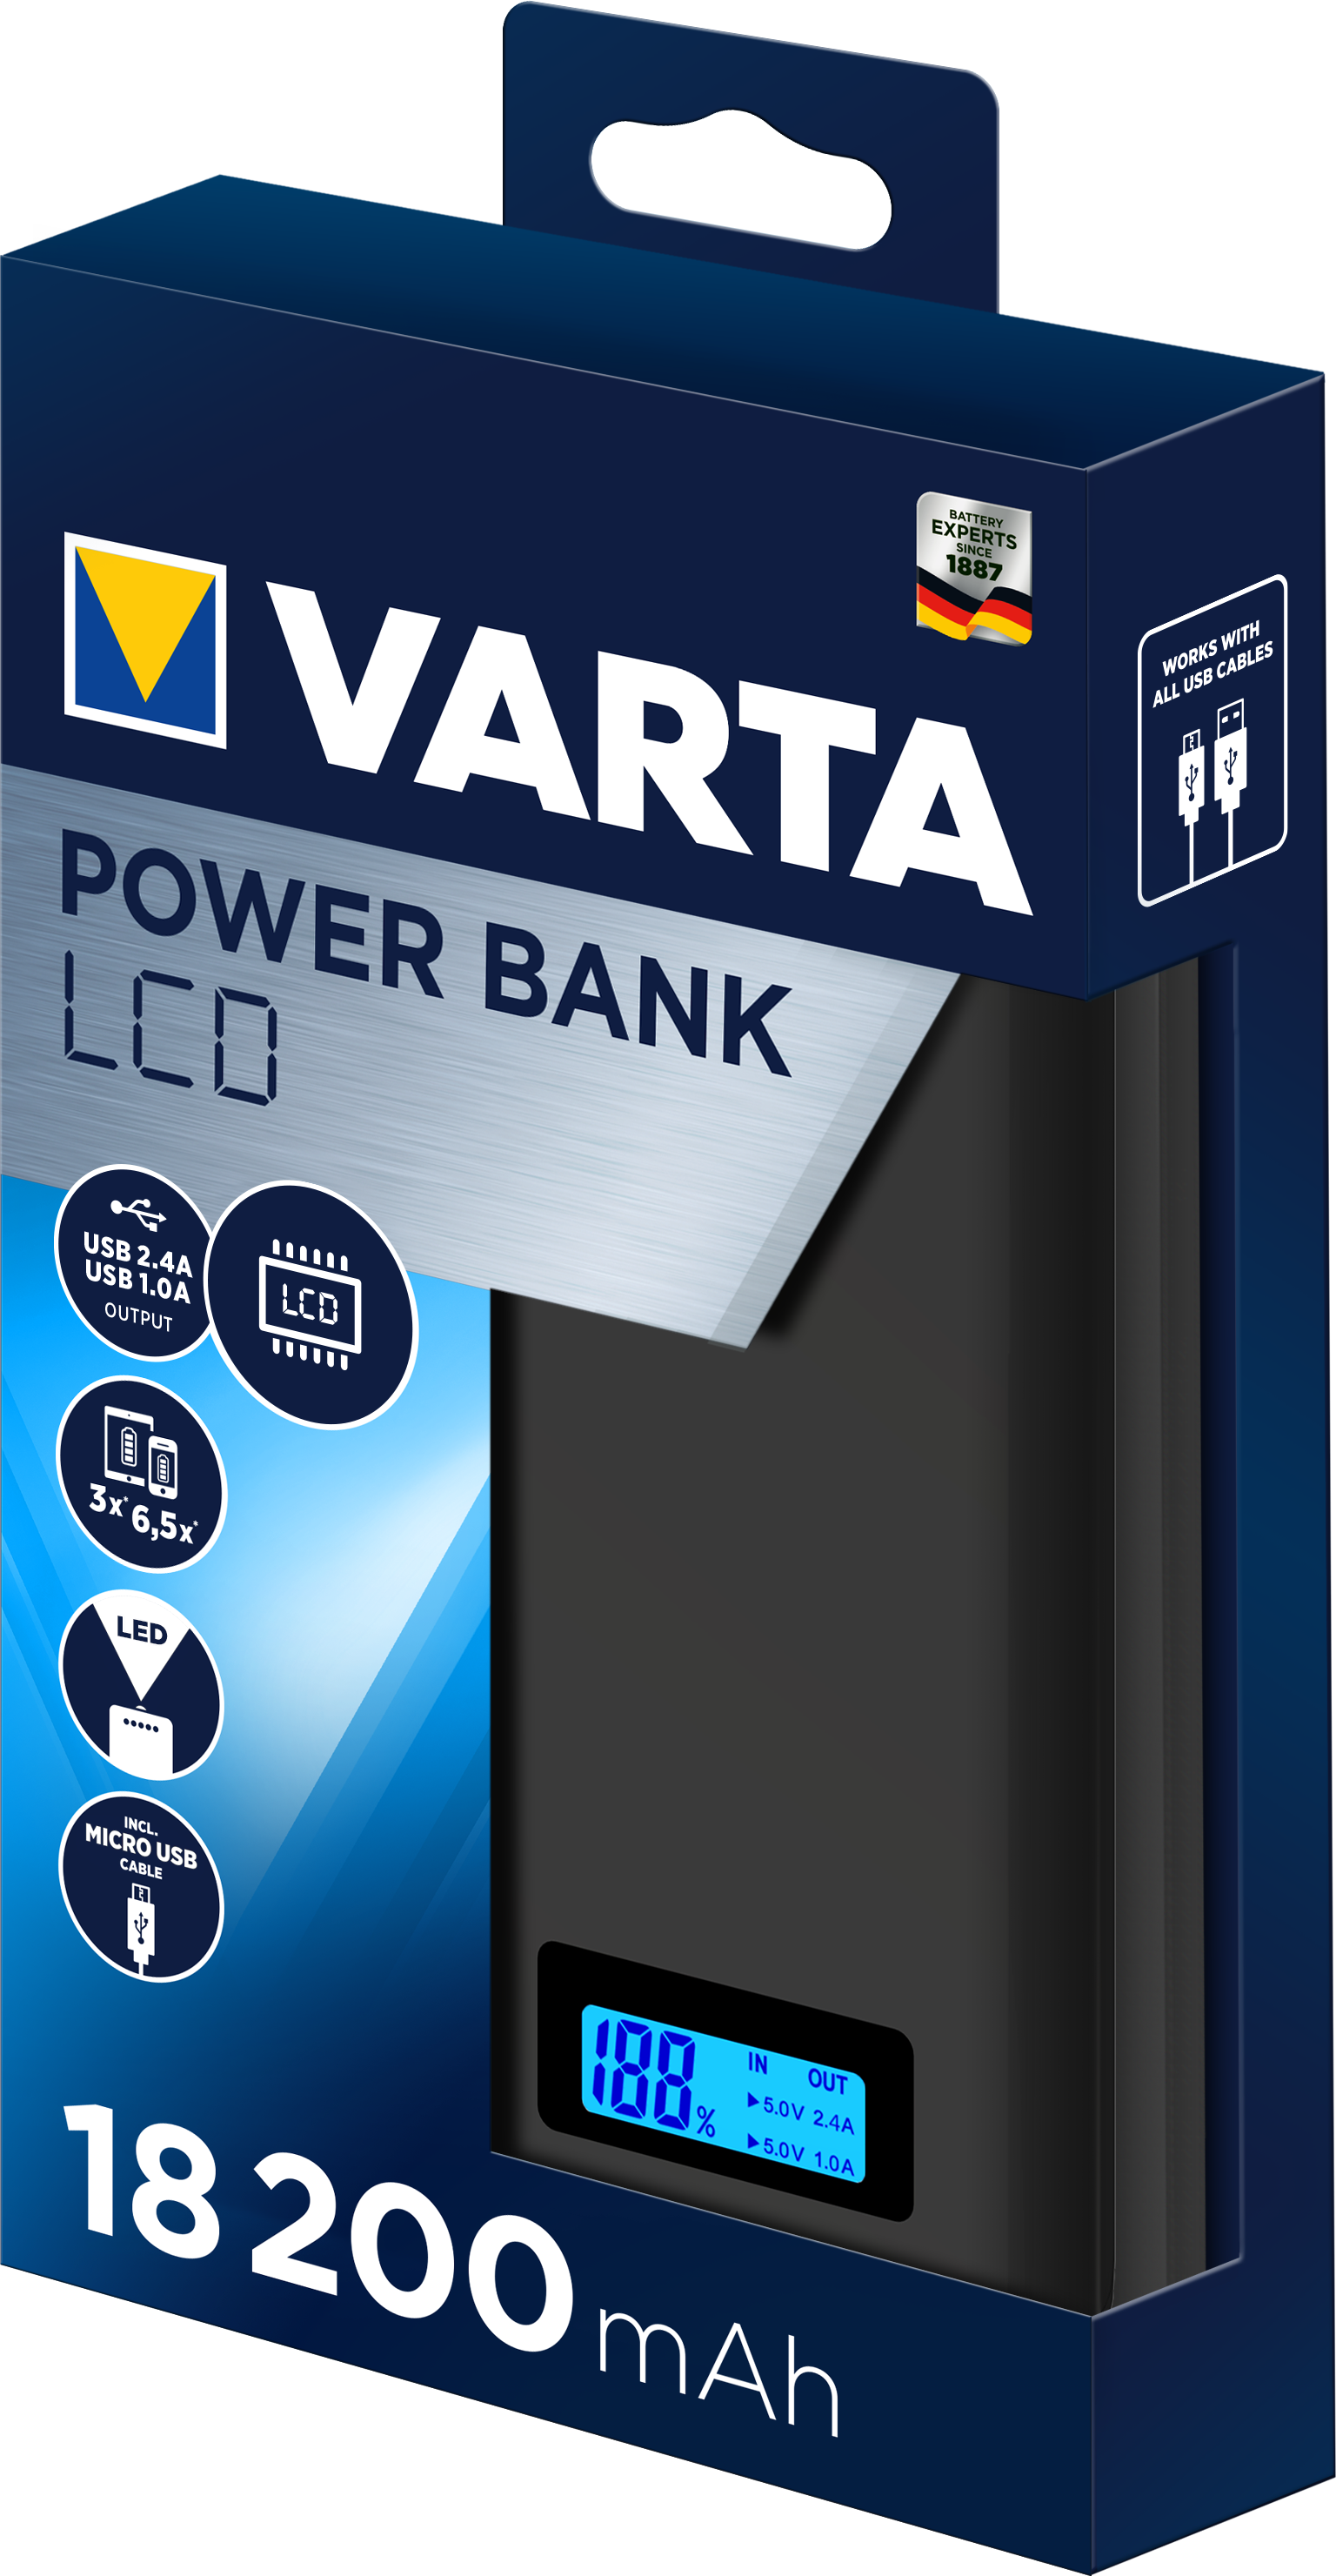 VARTA Portable LCD Power Bank 18200 +charging cable 18200mAh (57972101111)